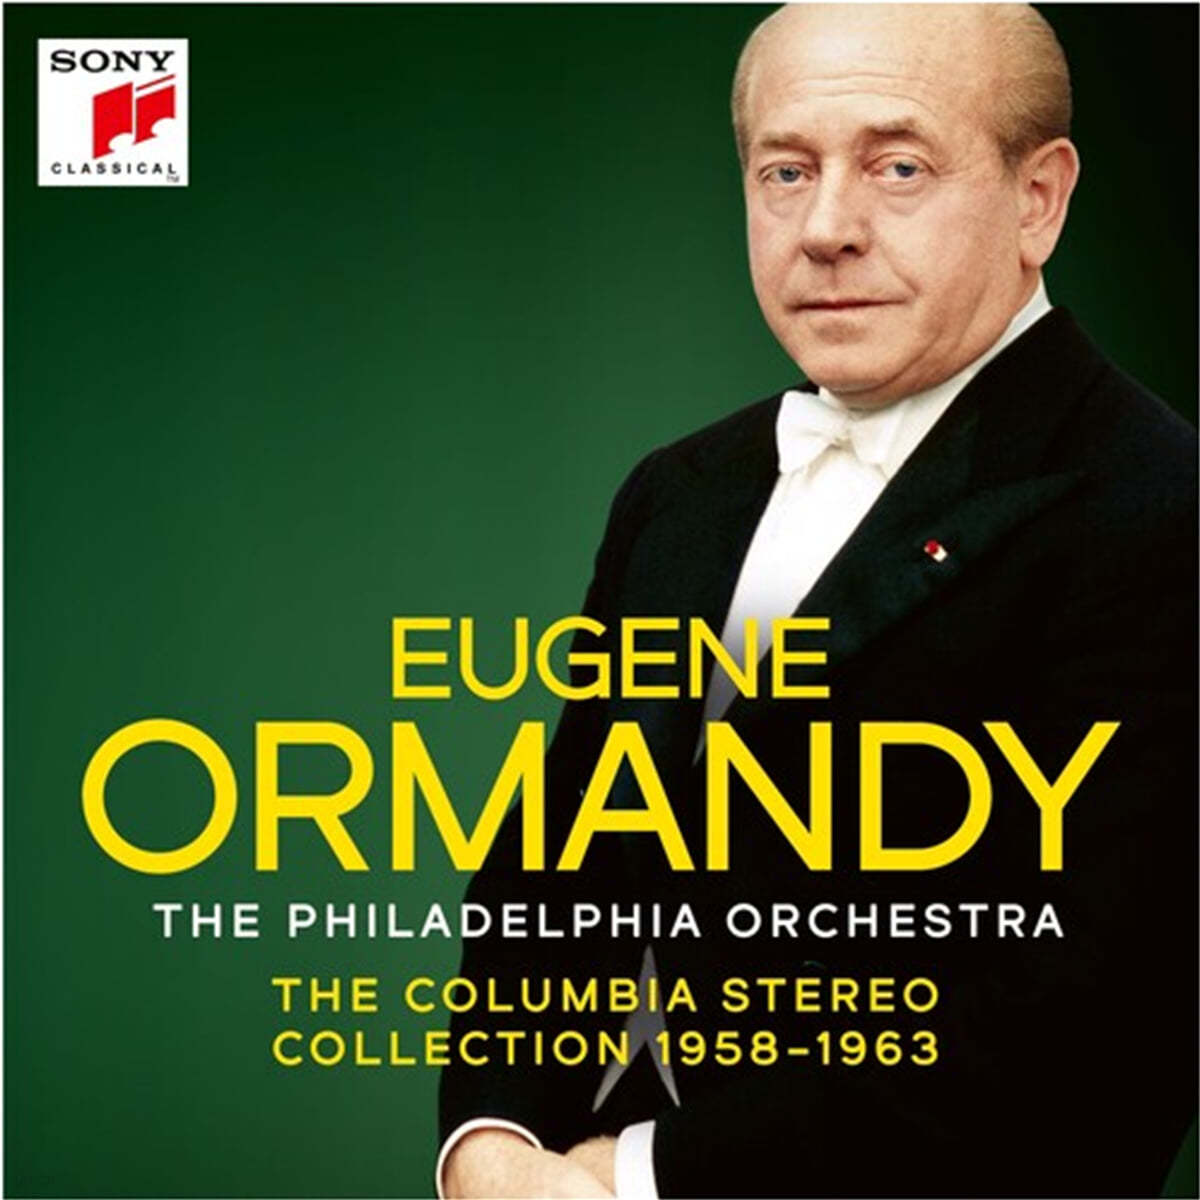 유진 오먼디 콜럼비아 스테레오 컬렉션 (Eugene Ormandy And The Philadelphia Orchestra - The Columbia Stereo Collection)